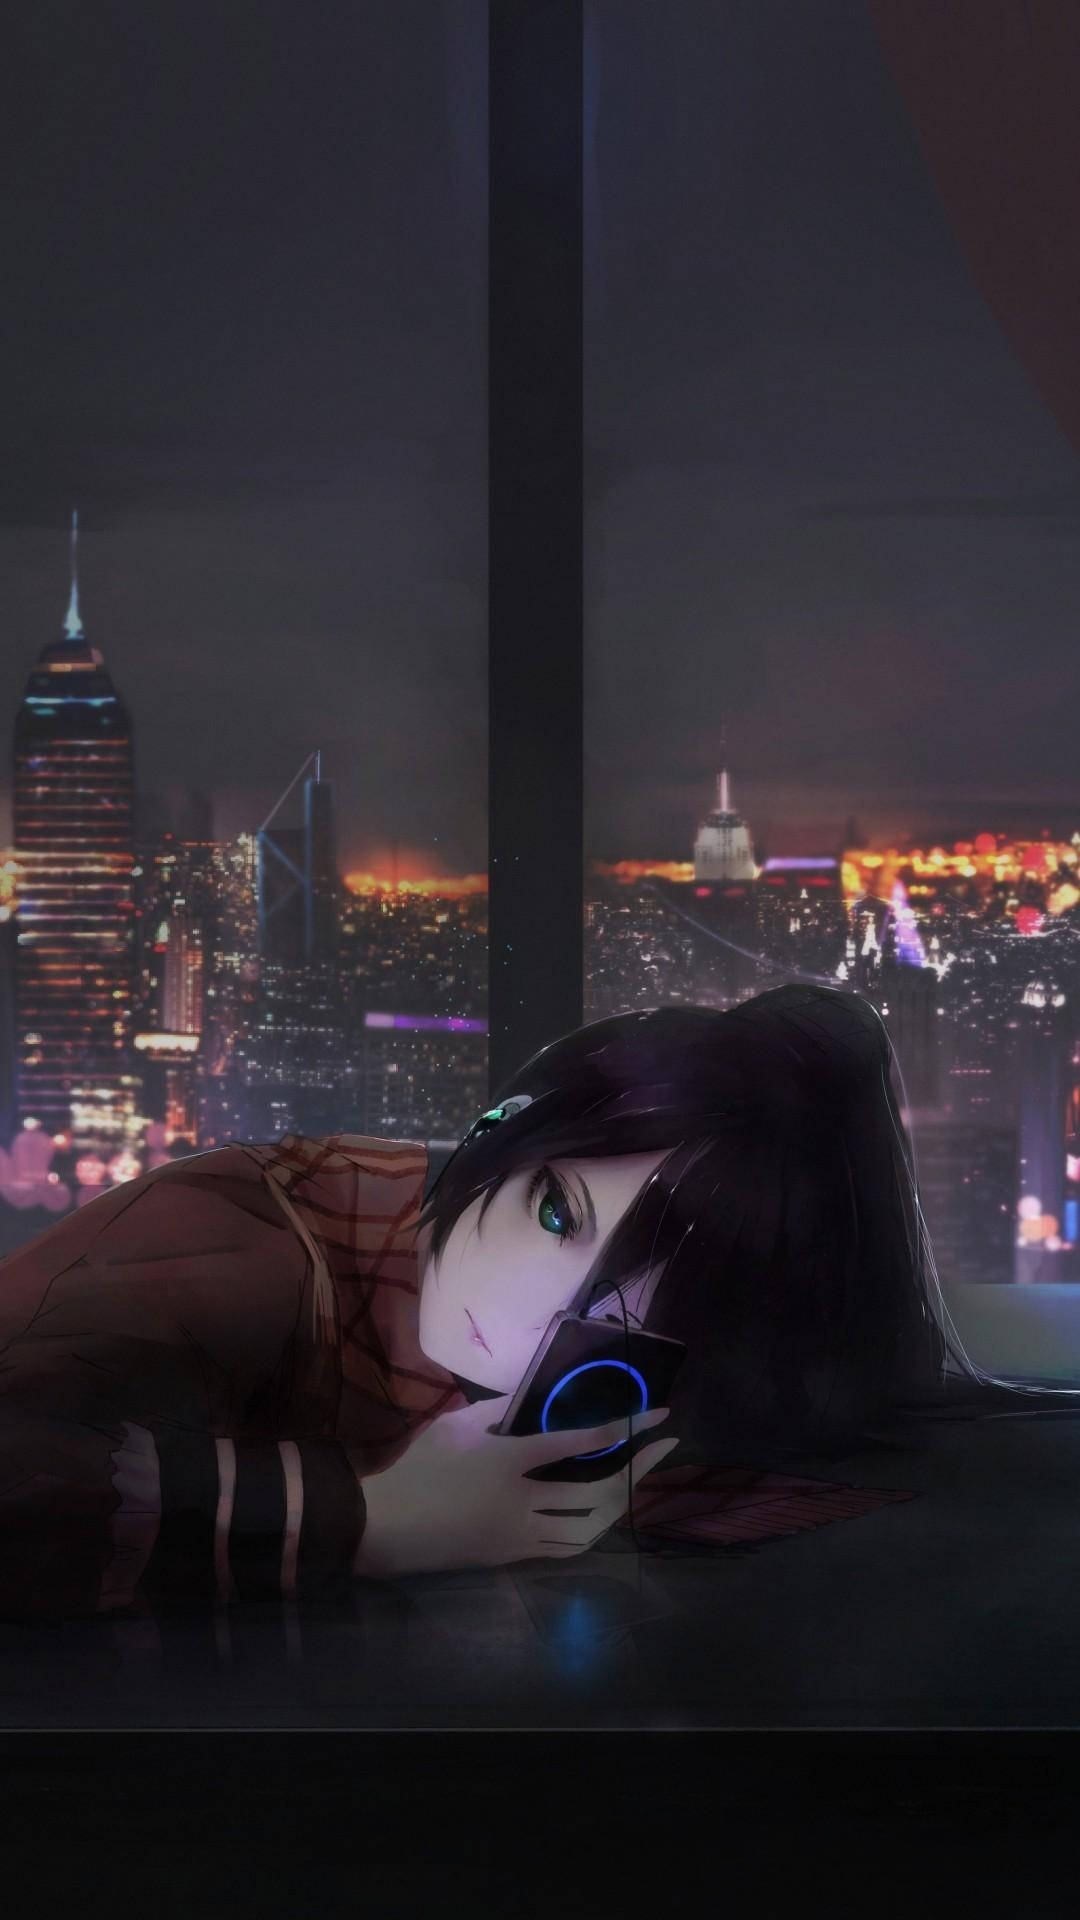 Anime Girl Sad Alone Using Phone On Desk Background